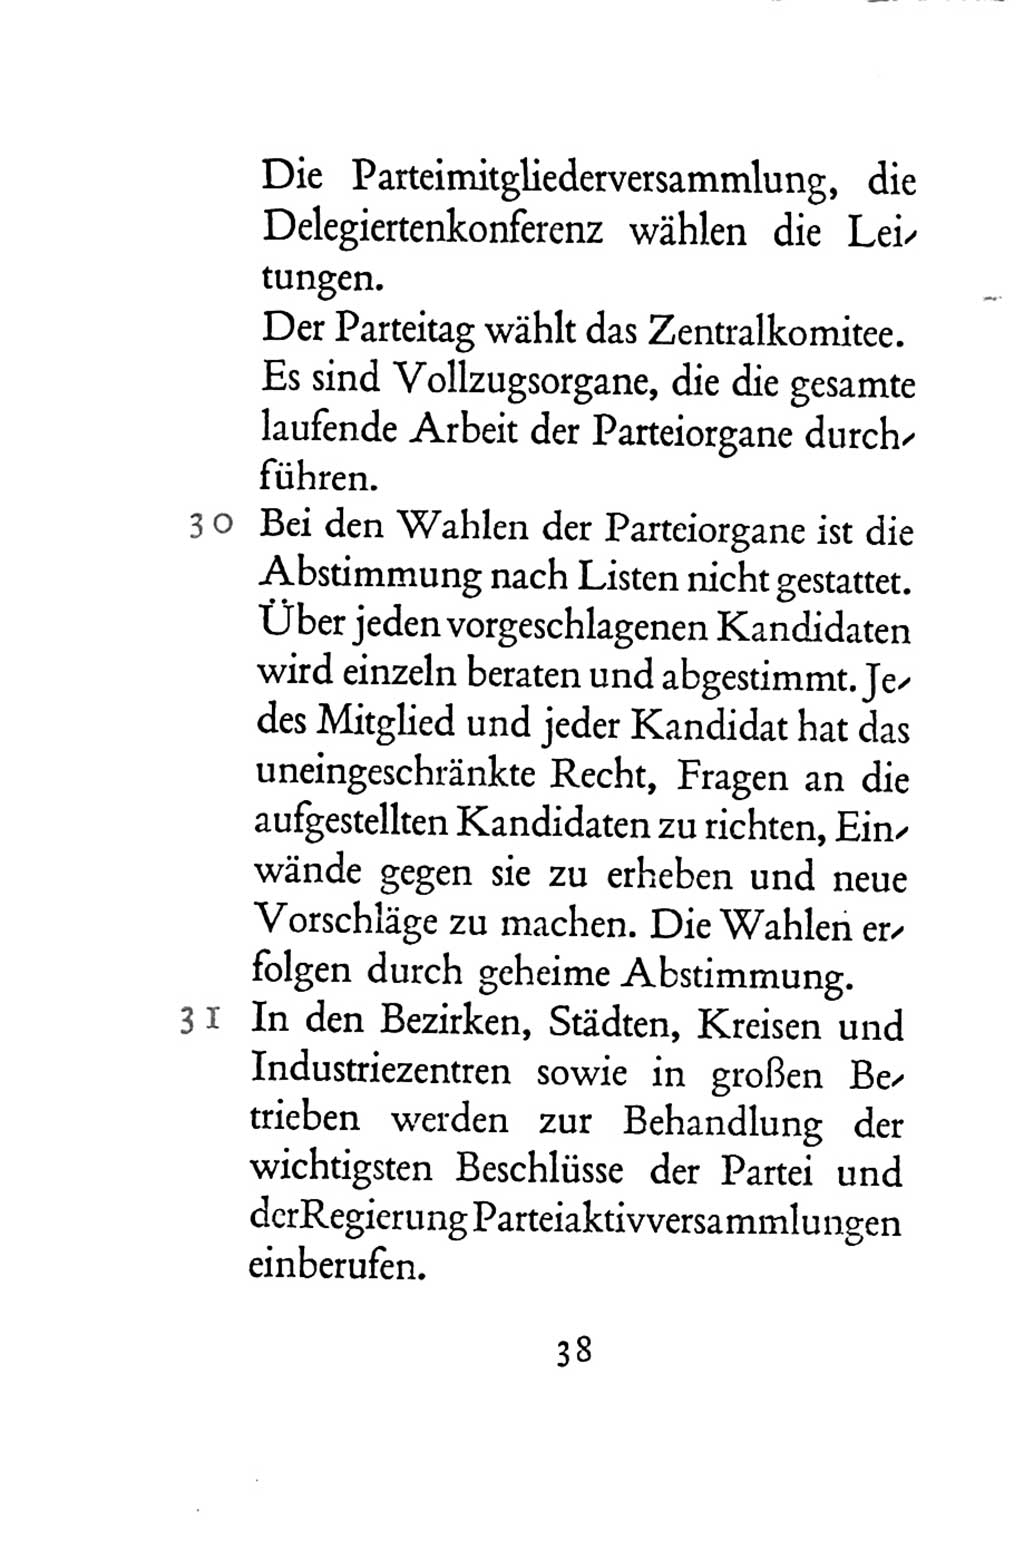 Statut der Sozialistischen Einheitspartei Deutschlands (SED) 1954, Seite 38